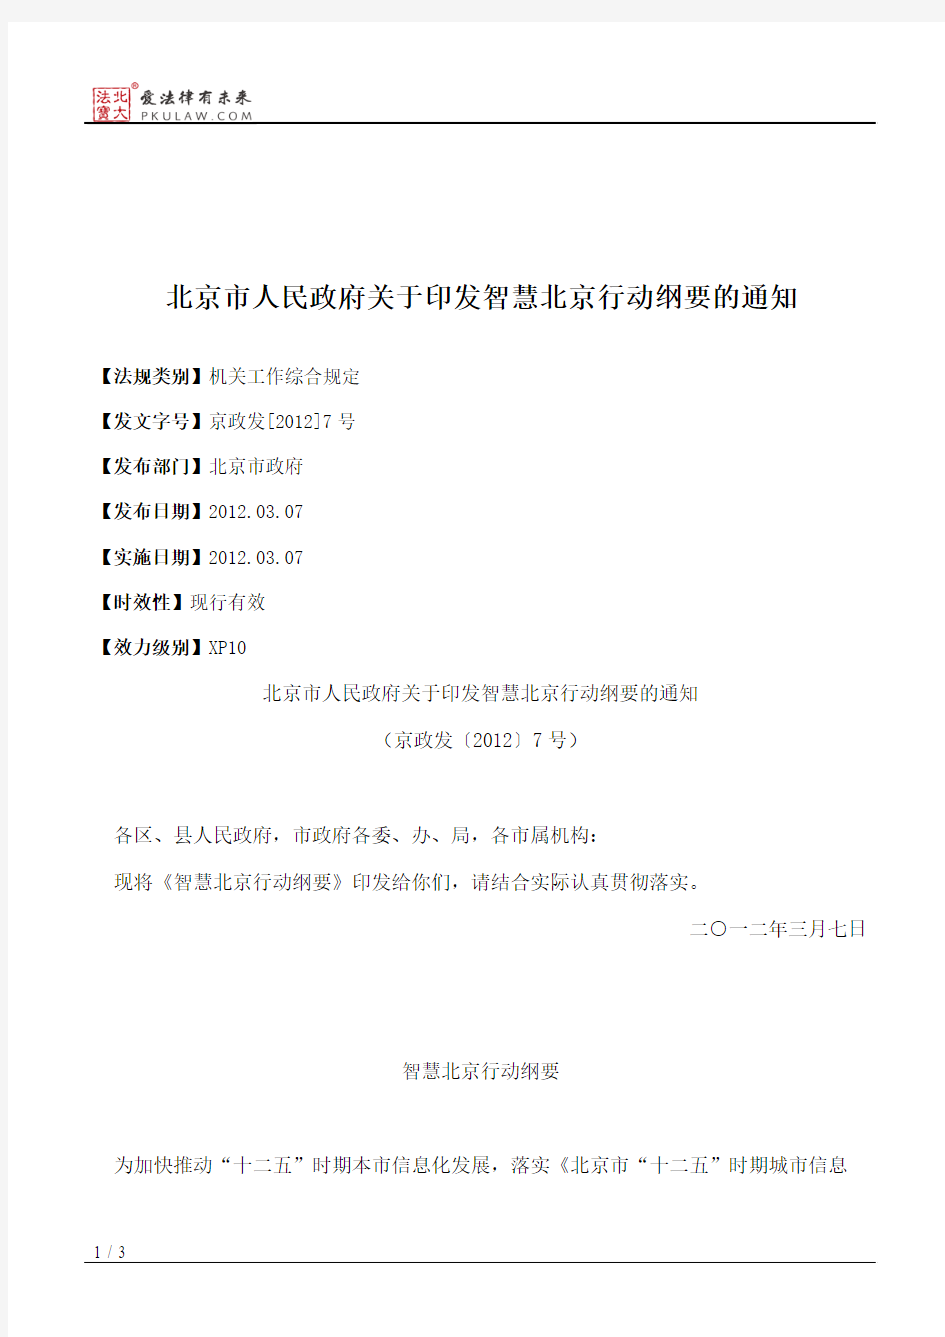 北京市人民政府关于印发智慧北京行动纲要的通知